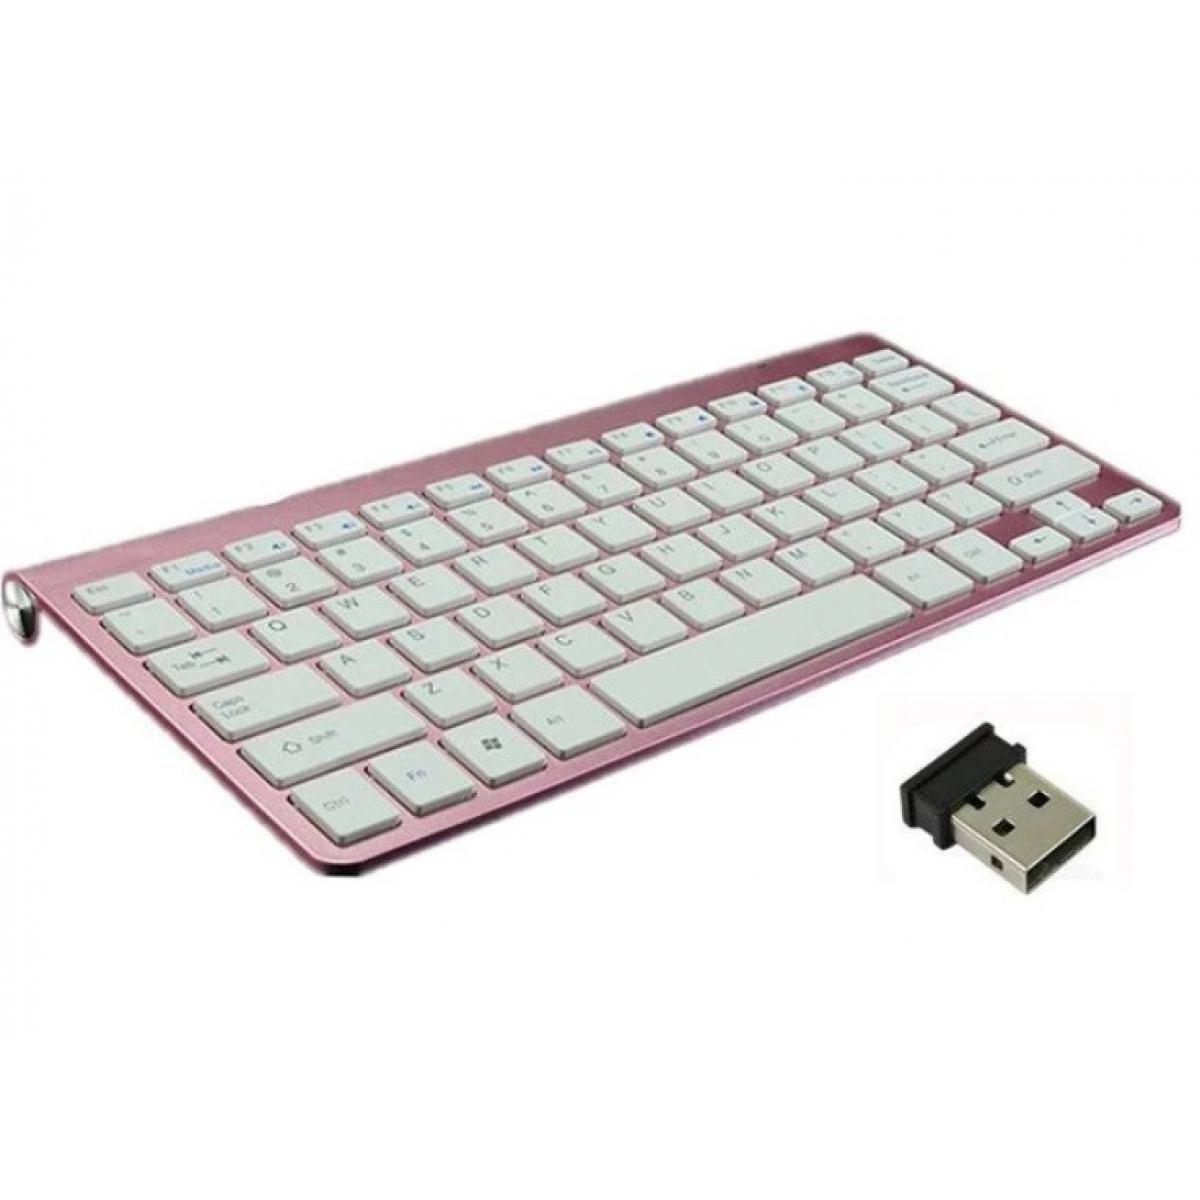 Shot - Clavier Sans Fil Metal pour PC THOMSOM USB QWERTY Piles (ROSE) - Clavier